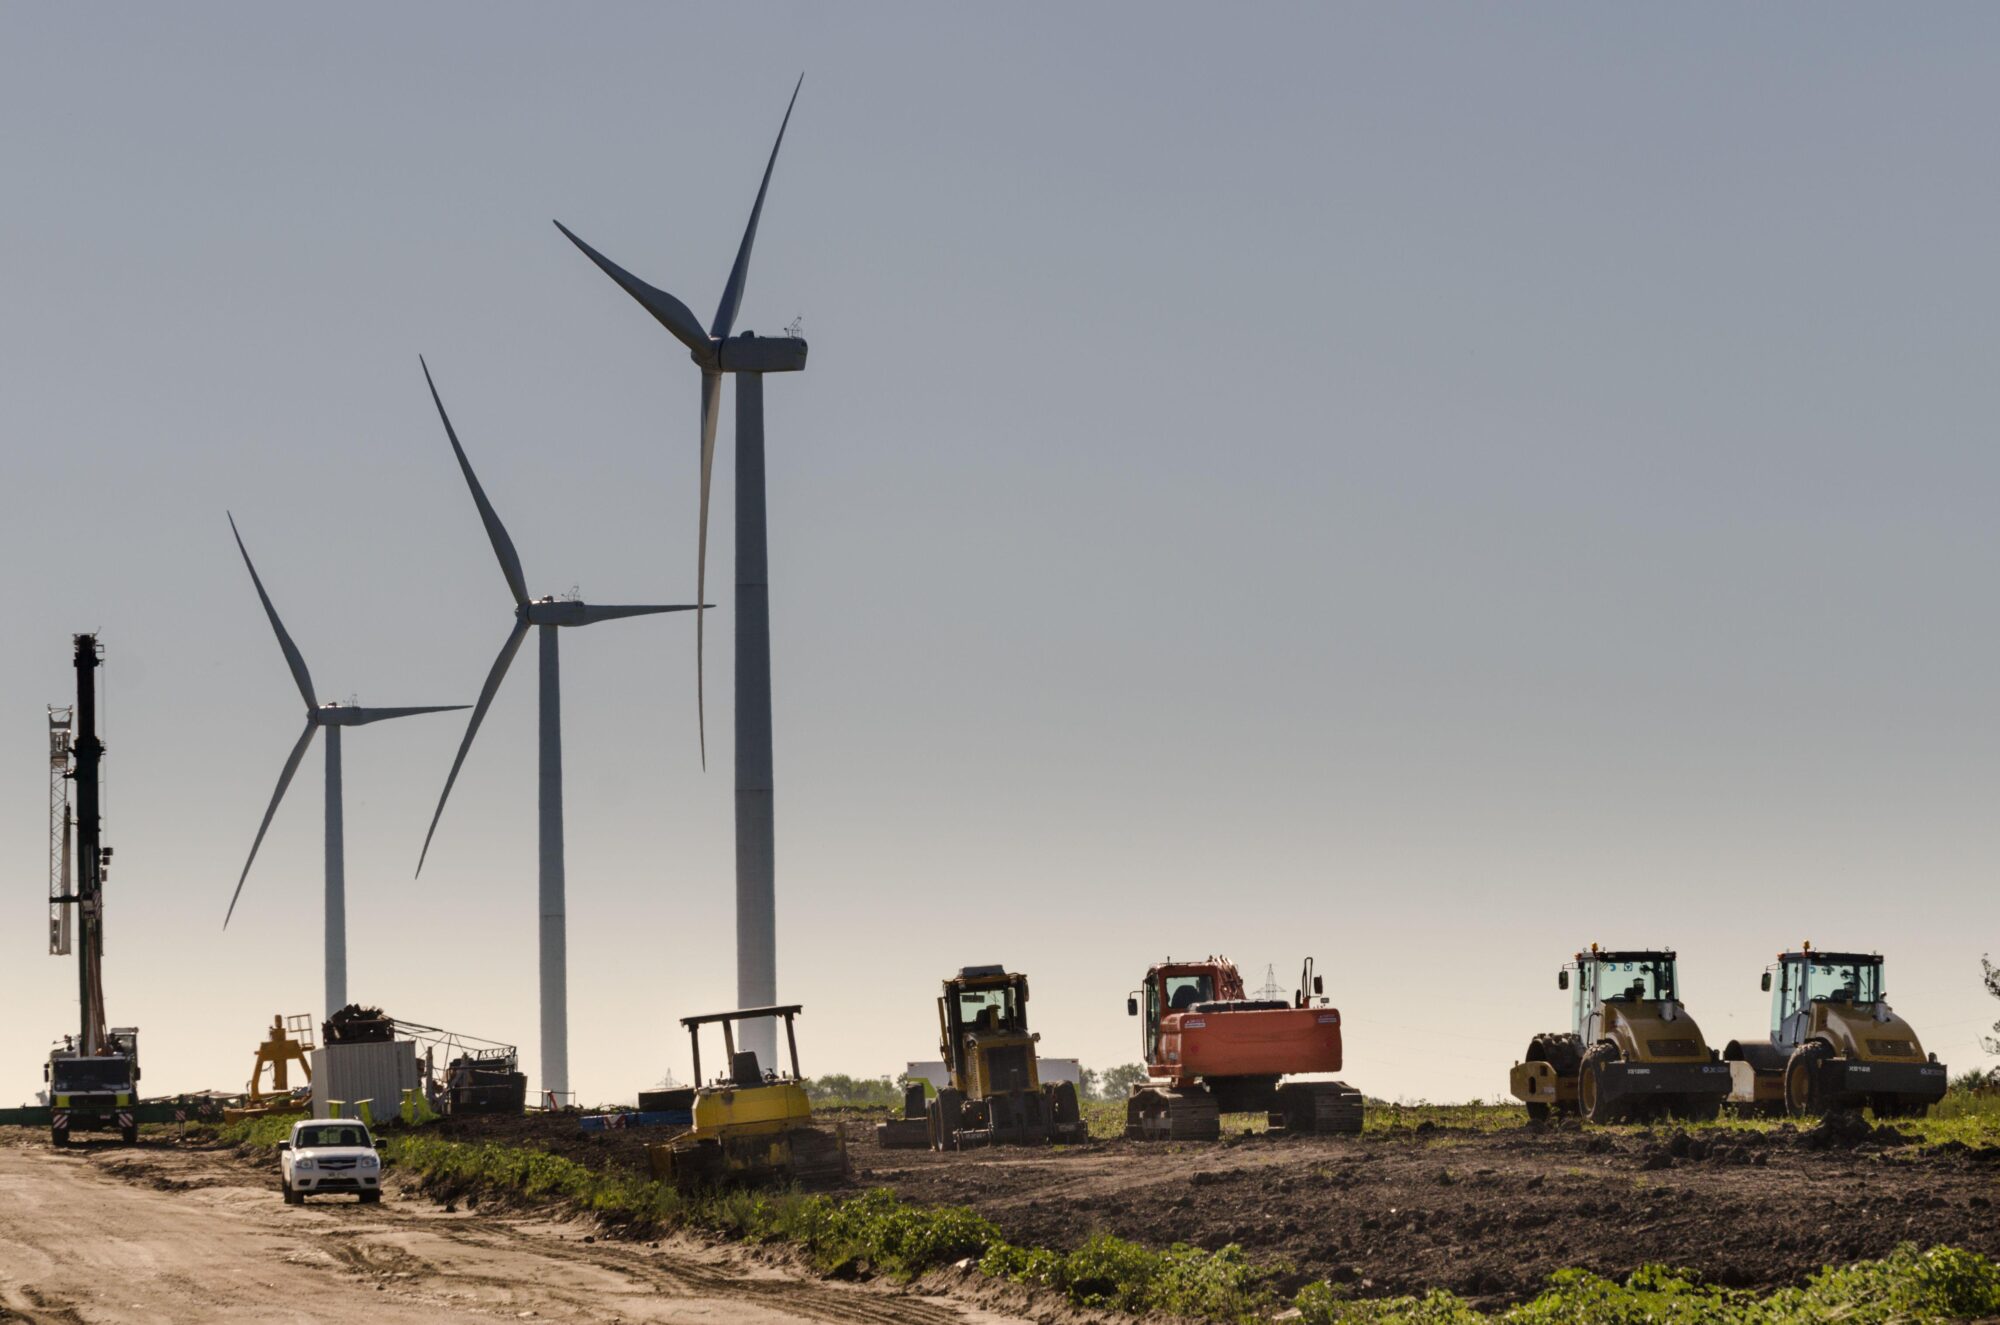 Molinos de viento y maquinaria agricola en un campo en Uruguay